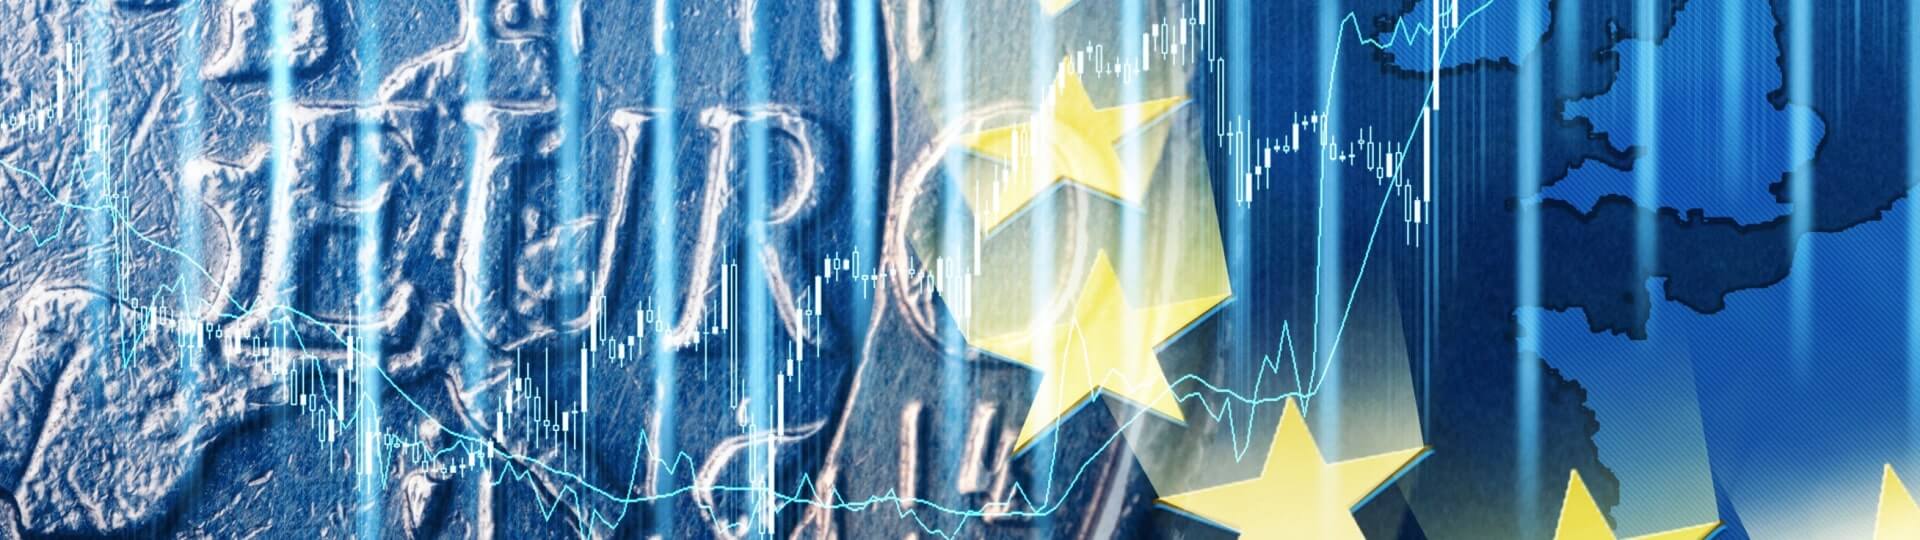 Bankovní regulátoři EU vítají dohodu o převzetí Credit Suisse